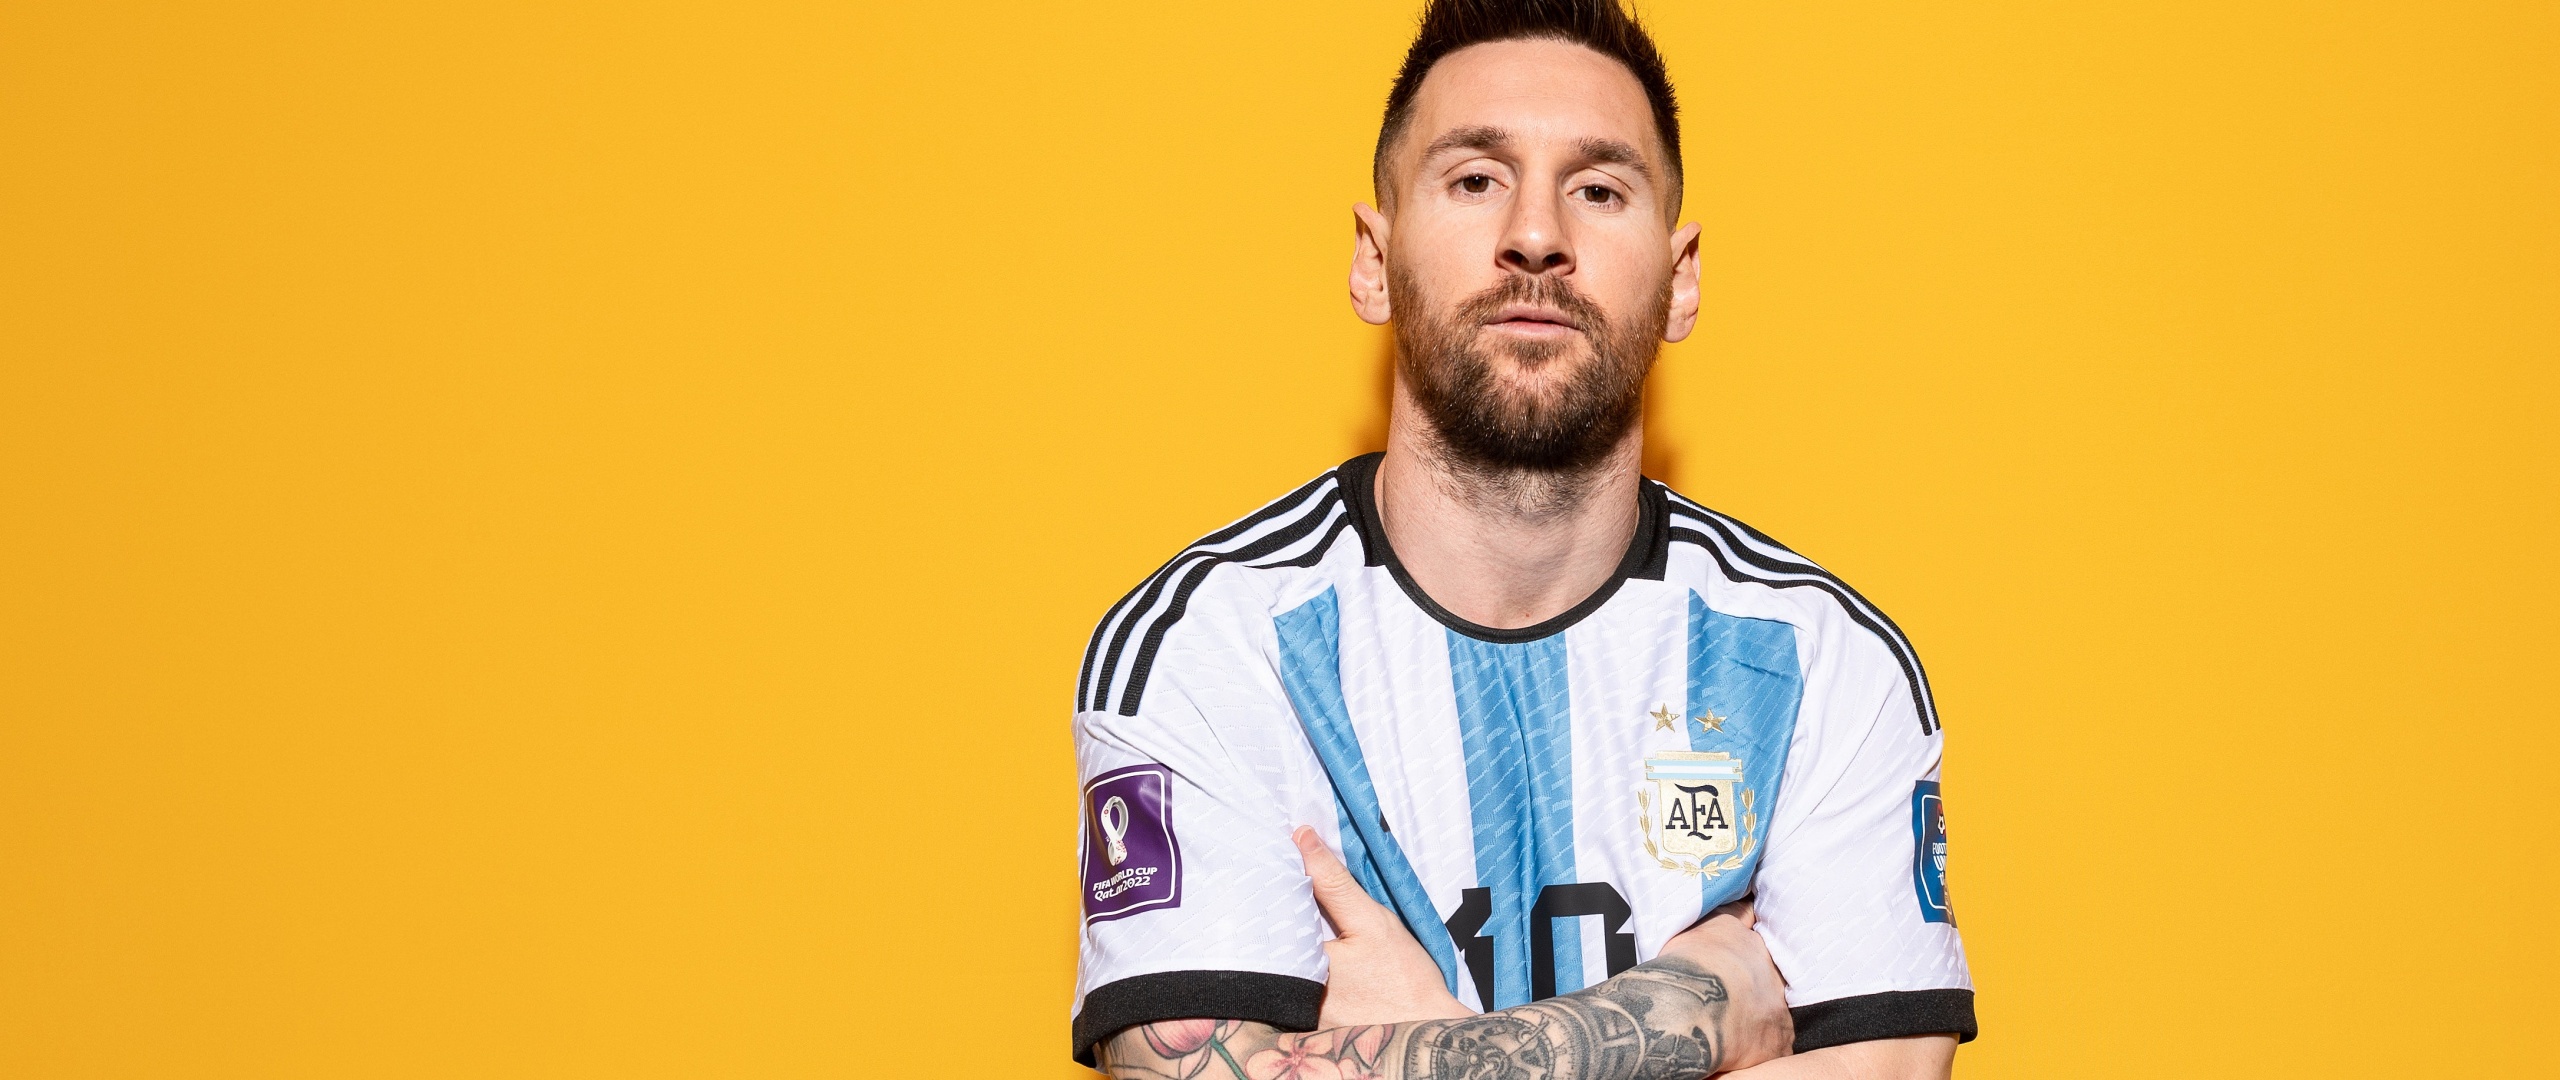 48 Messi Argentina Wallpaper 2015  WallpaperSafari